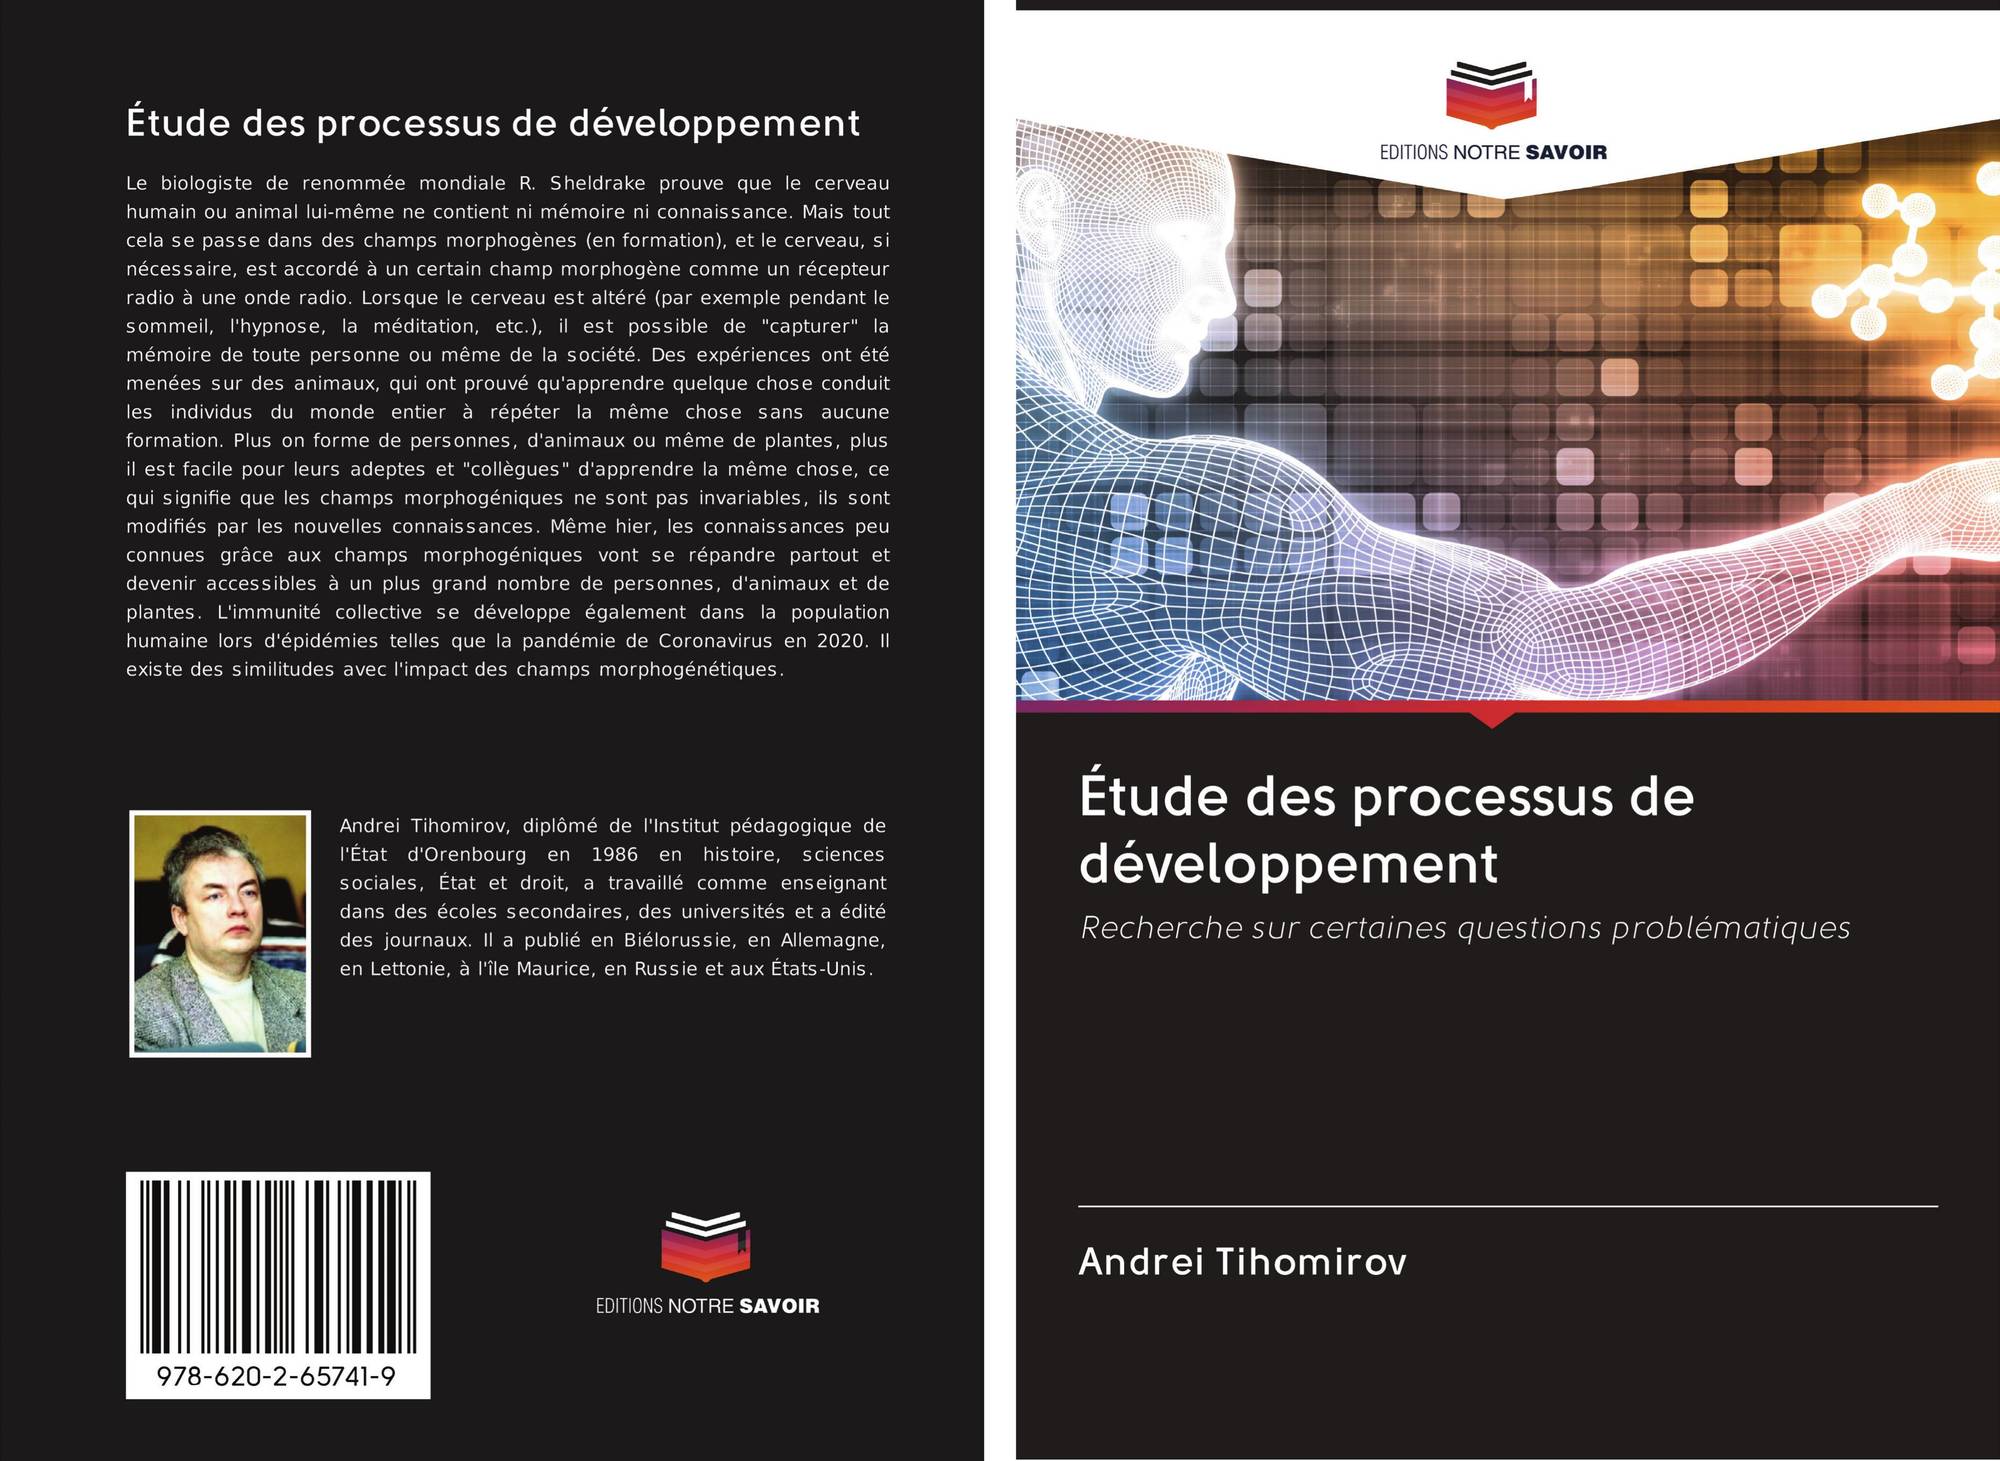 Etude Des Processus De Developpement 978 620 2 65741 9 6202657413 9786202657419 Kimin Andrei Tihomirov